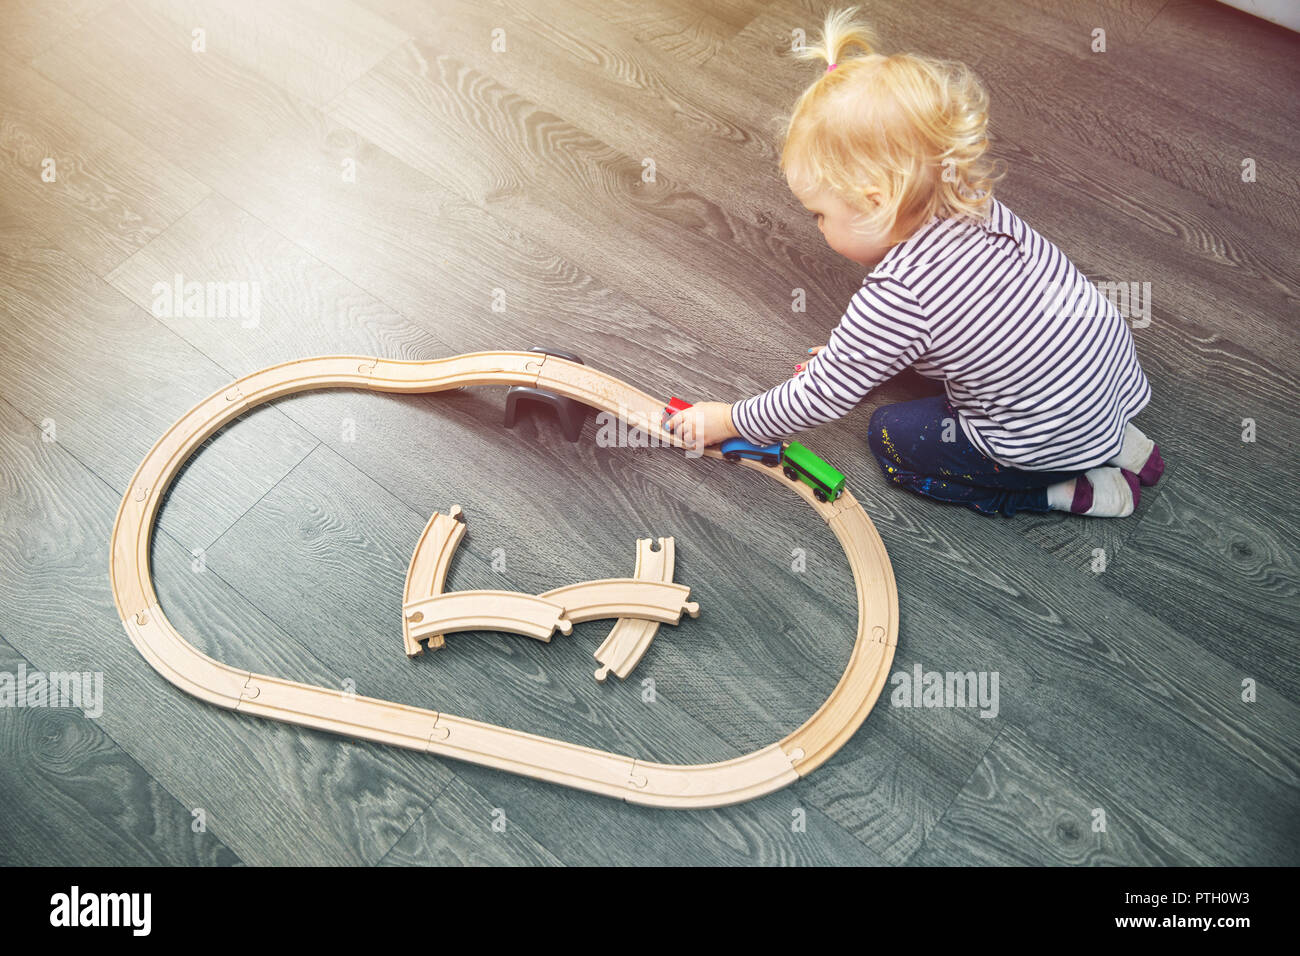 Little girl Playing with wooden railway sur marbre à la maison Banque D'Images